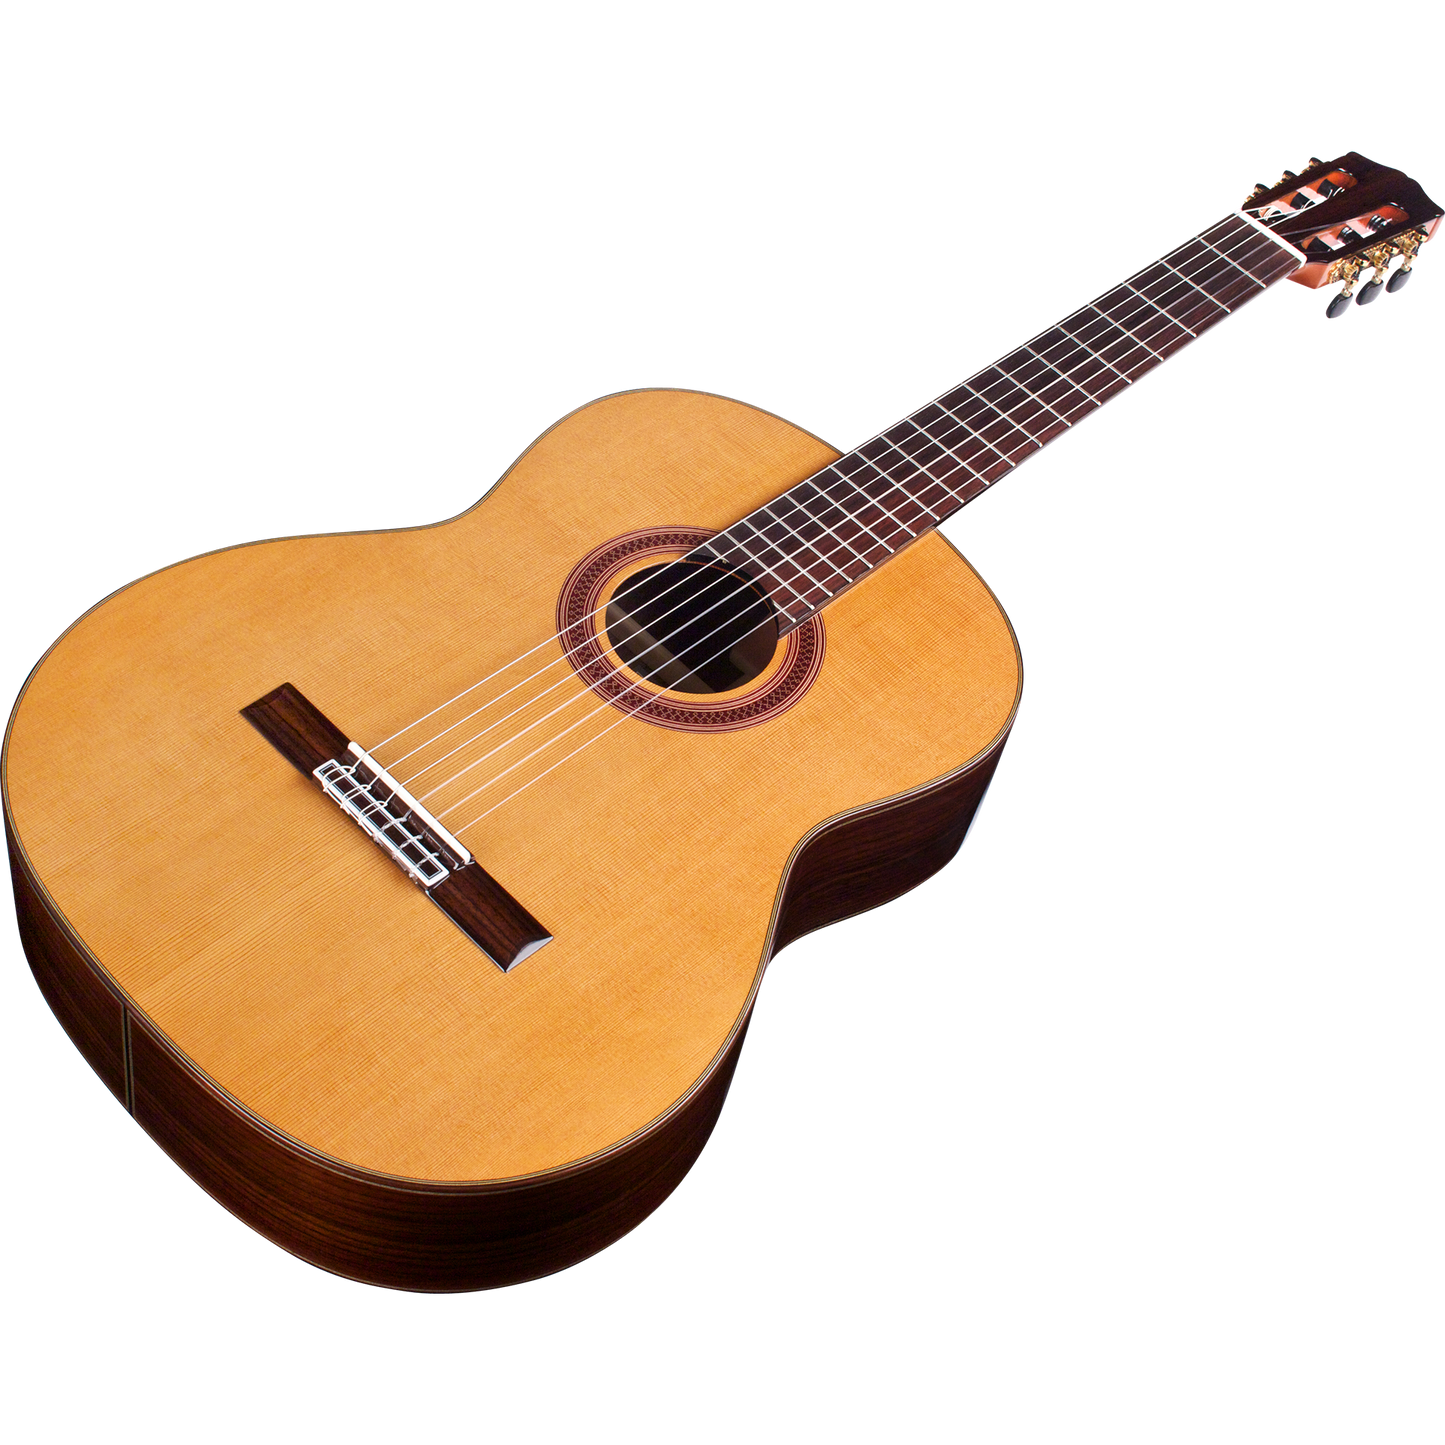 Cordoba C7 CD Classical Acoustic Guitar Cedar Top in Natural Finish